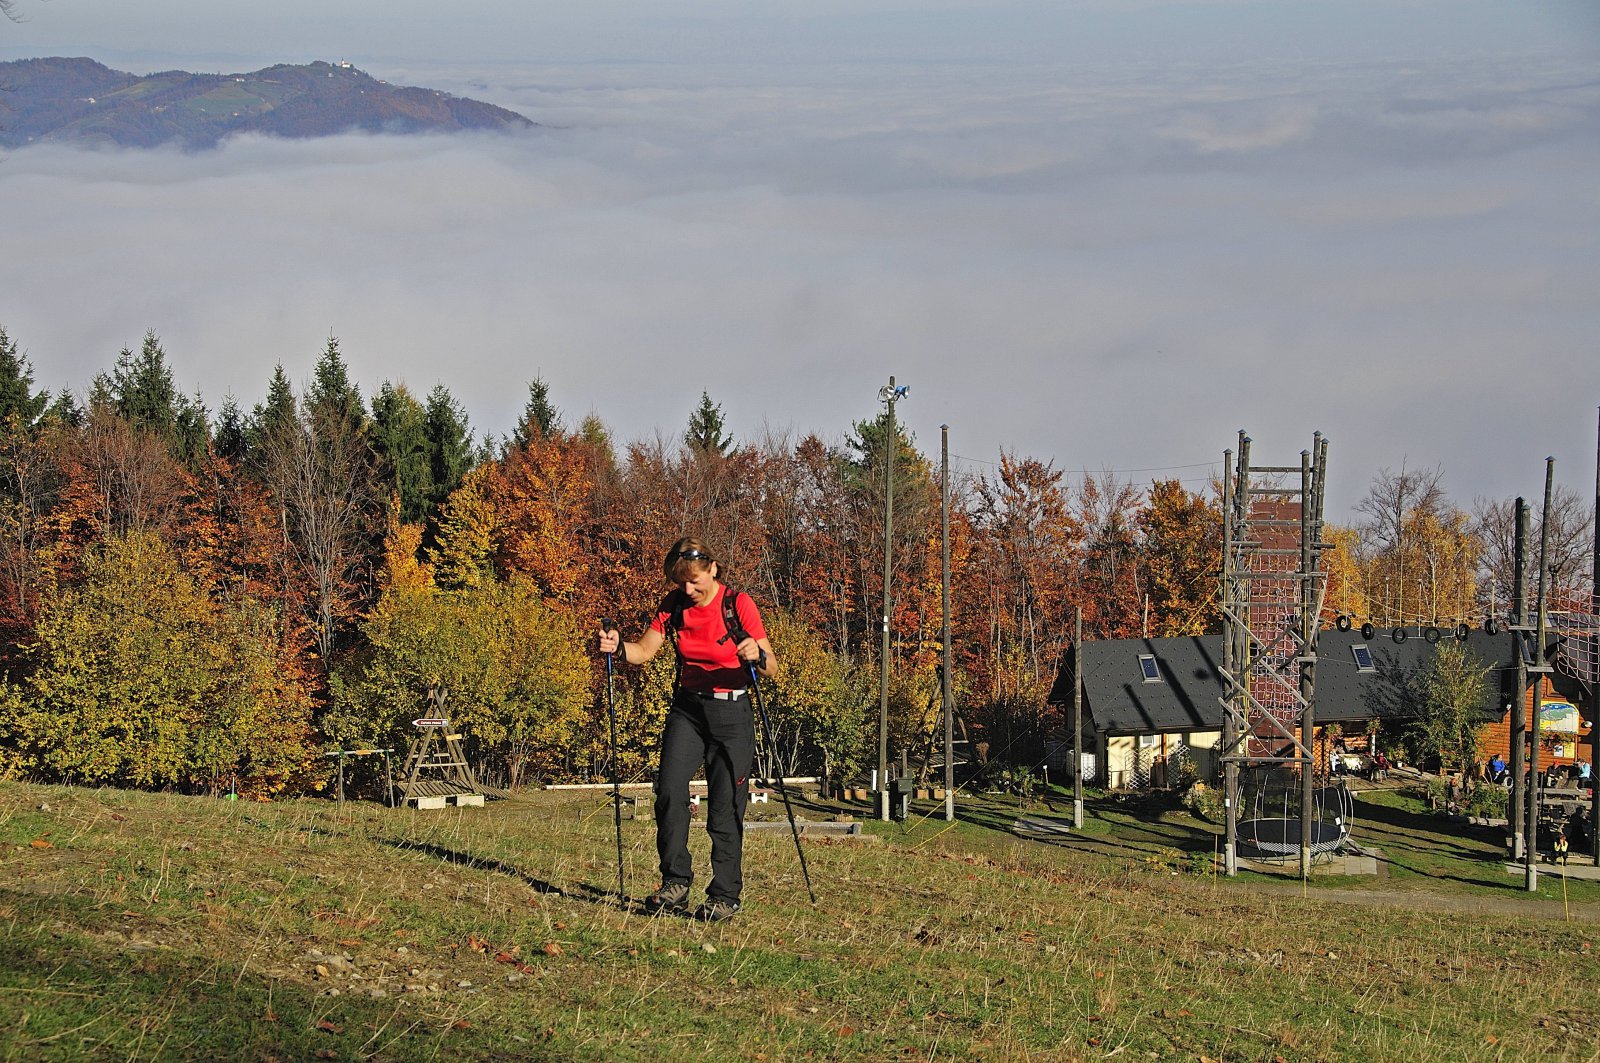 Pohodnistvo-na-Pohorju3-Hiking-on-Pohorje-Jurij-Pivka.jpg